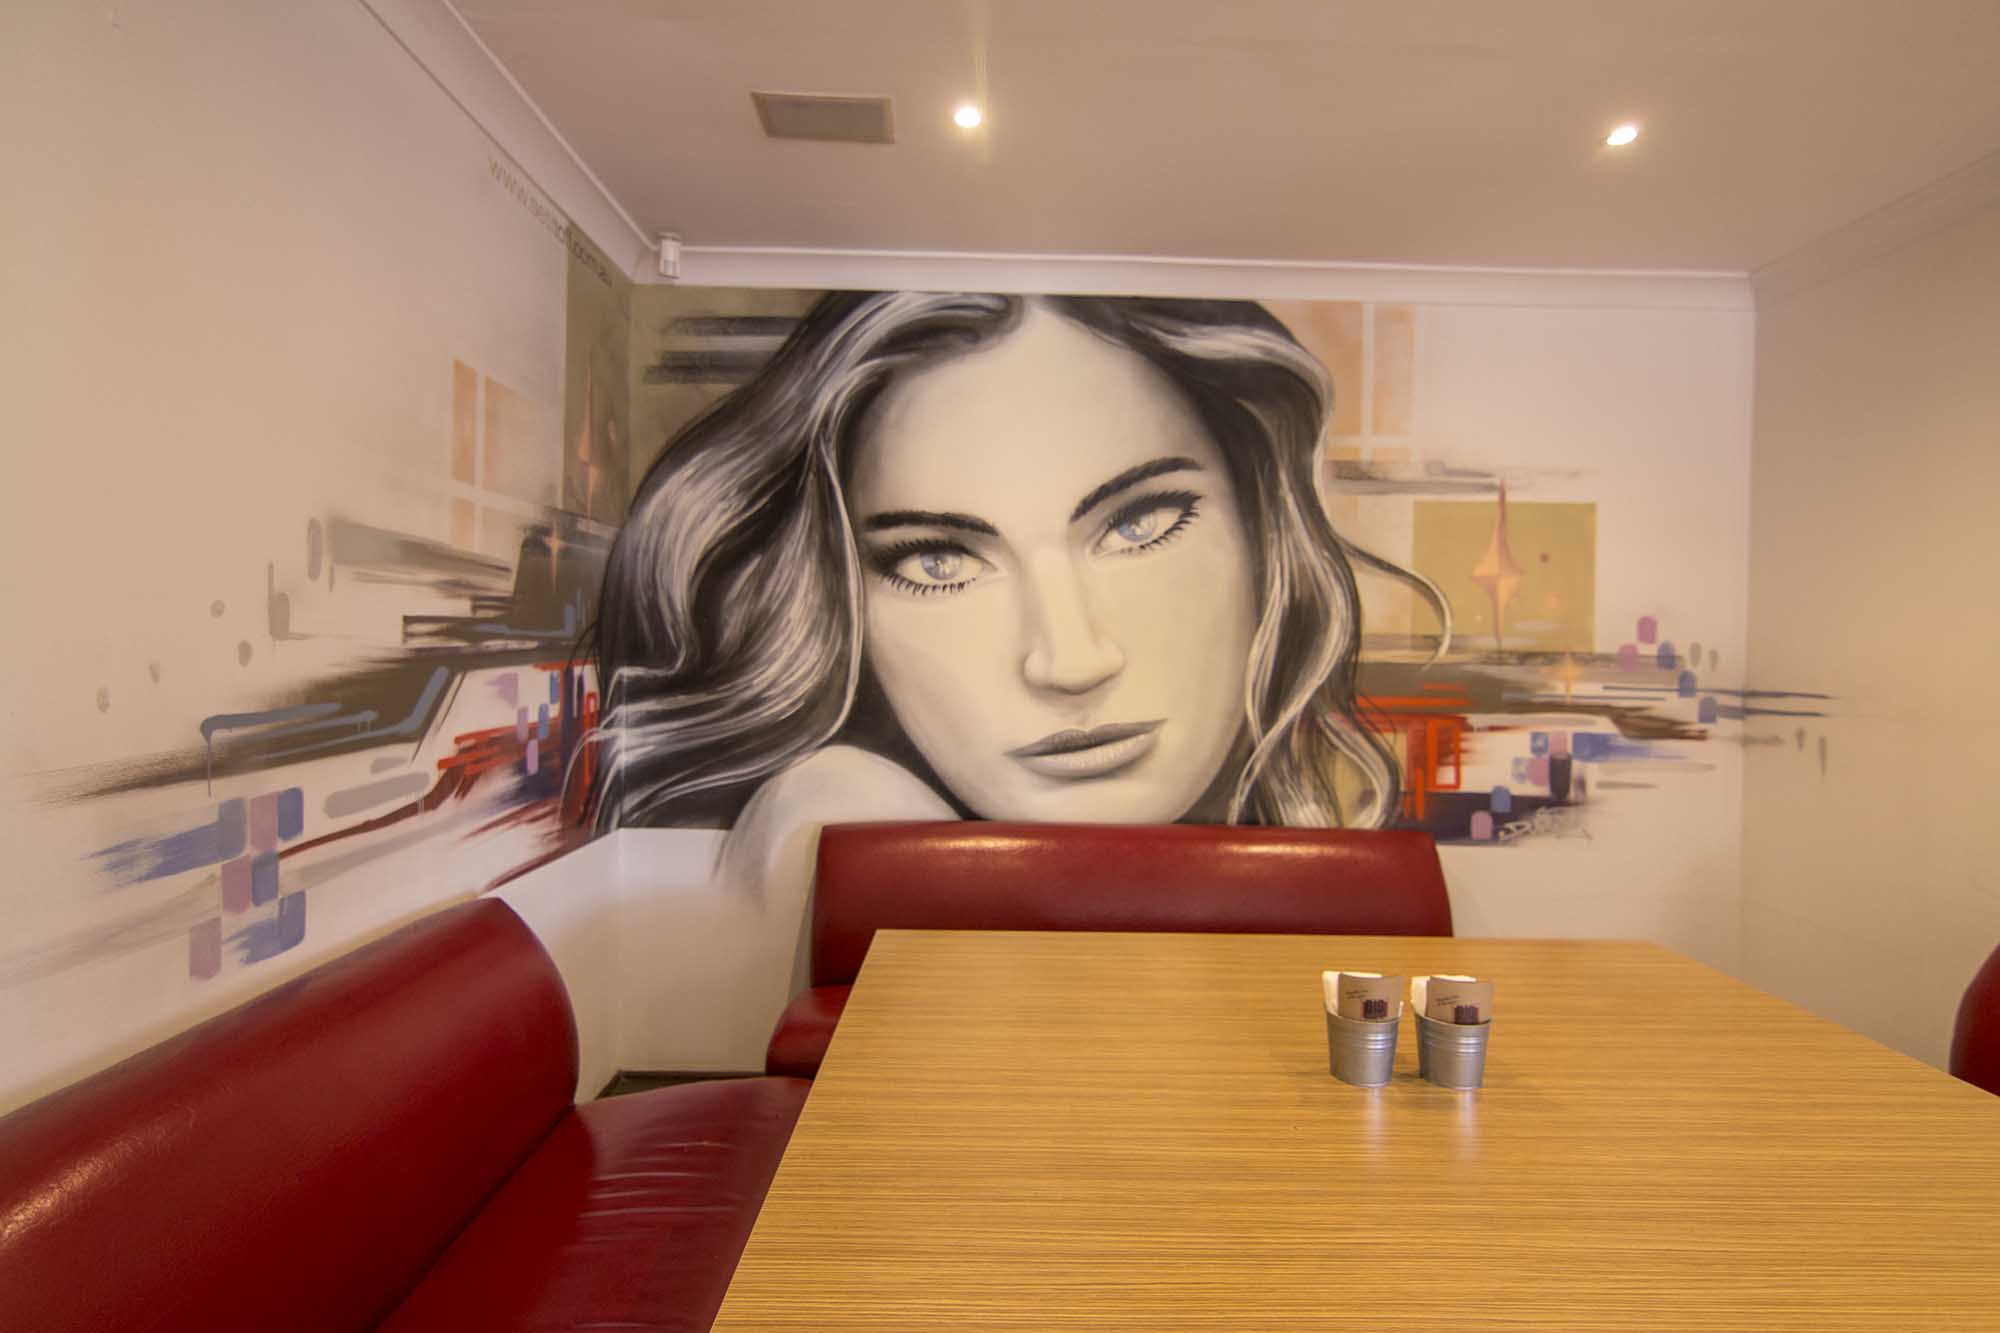 Graffiti mural portrait inside restaurant.